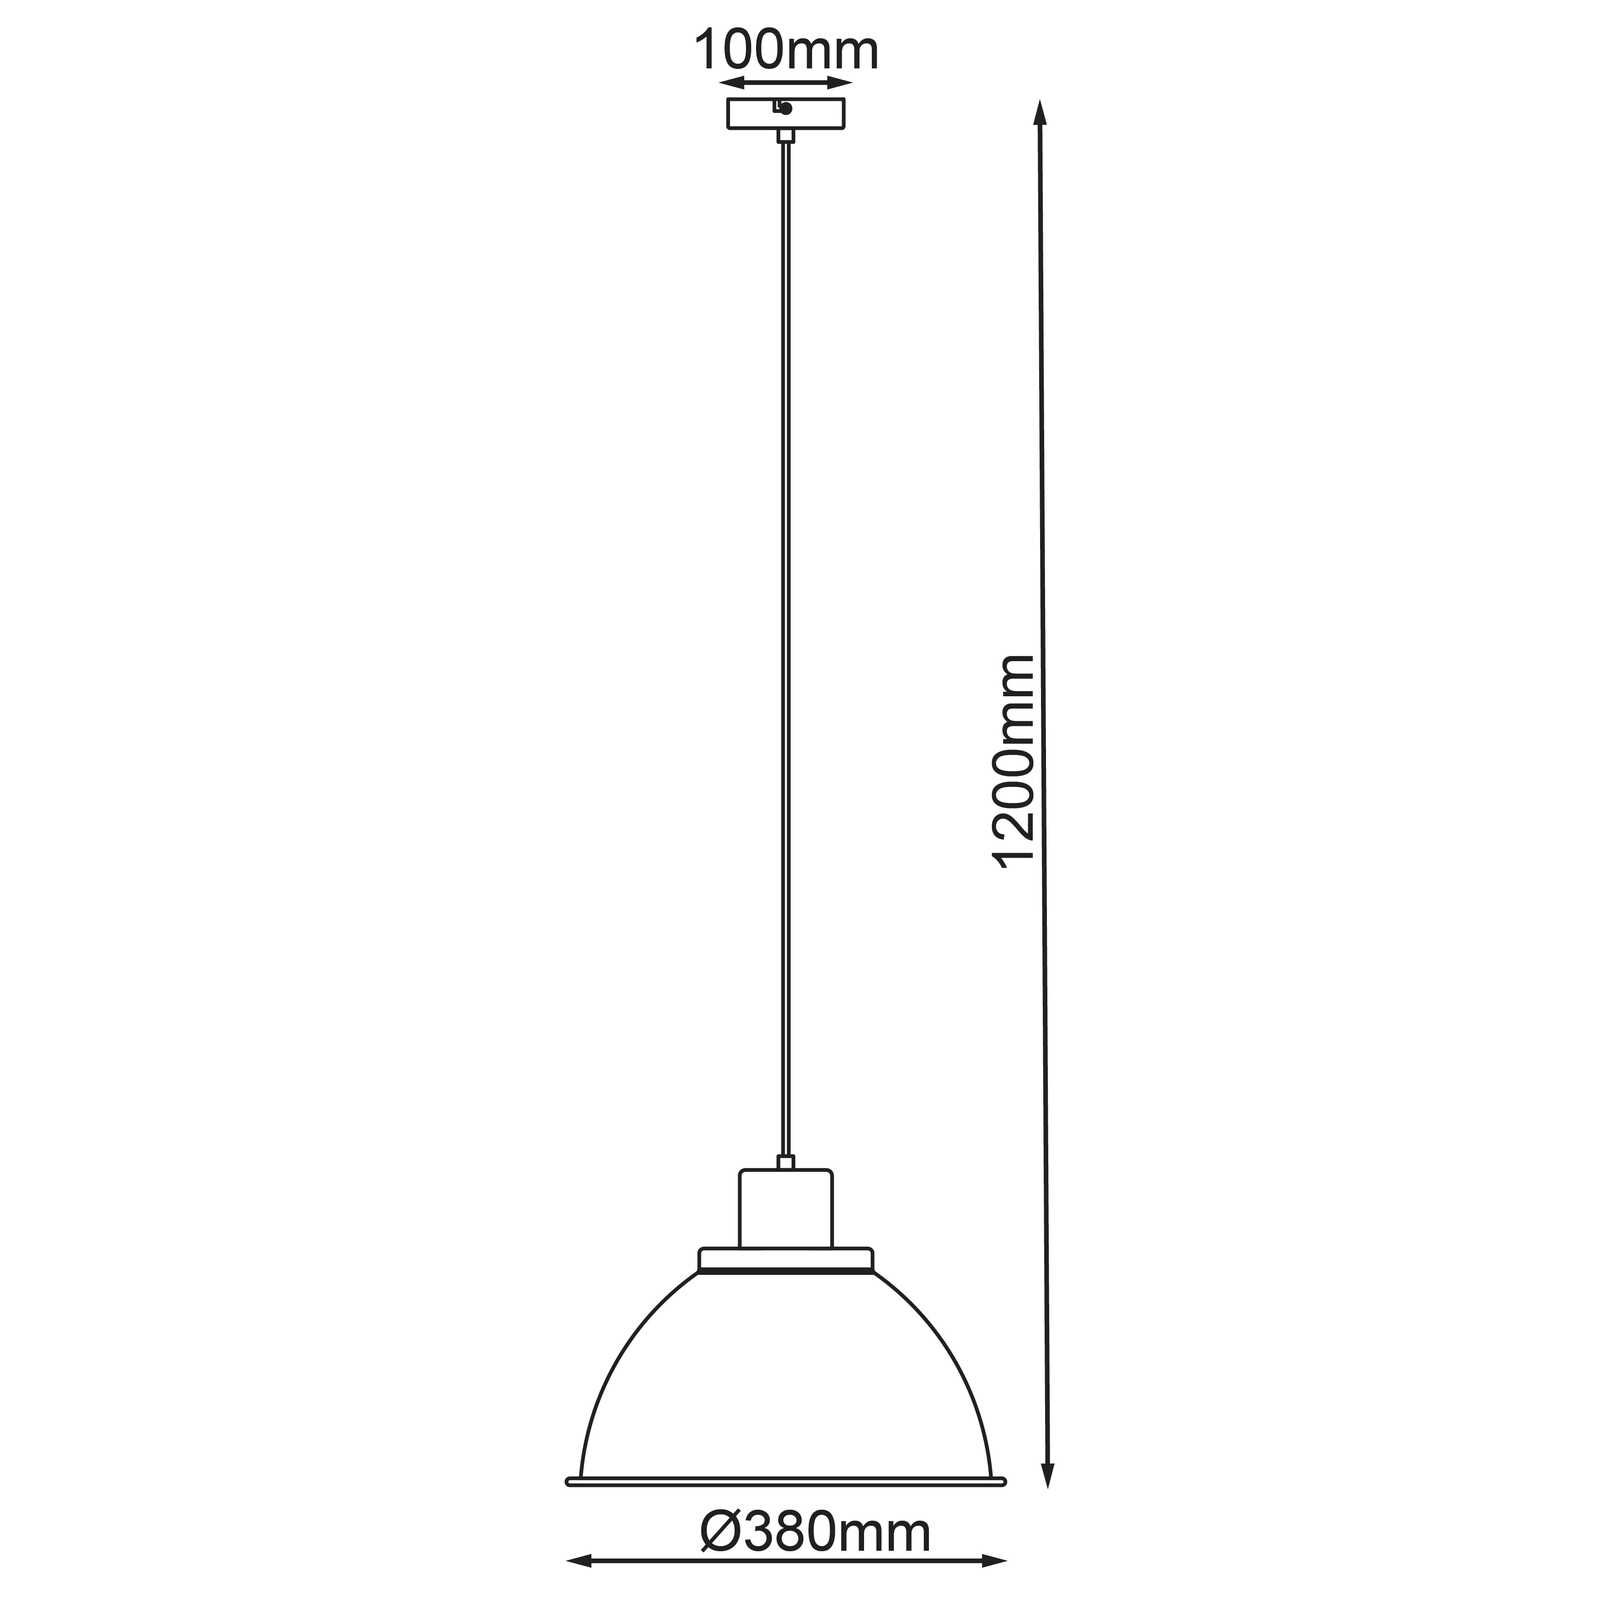             Houten hanglamp - Franziska 11 - Grijs
        